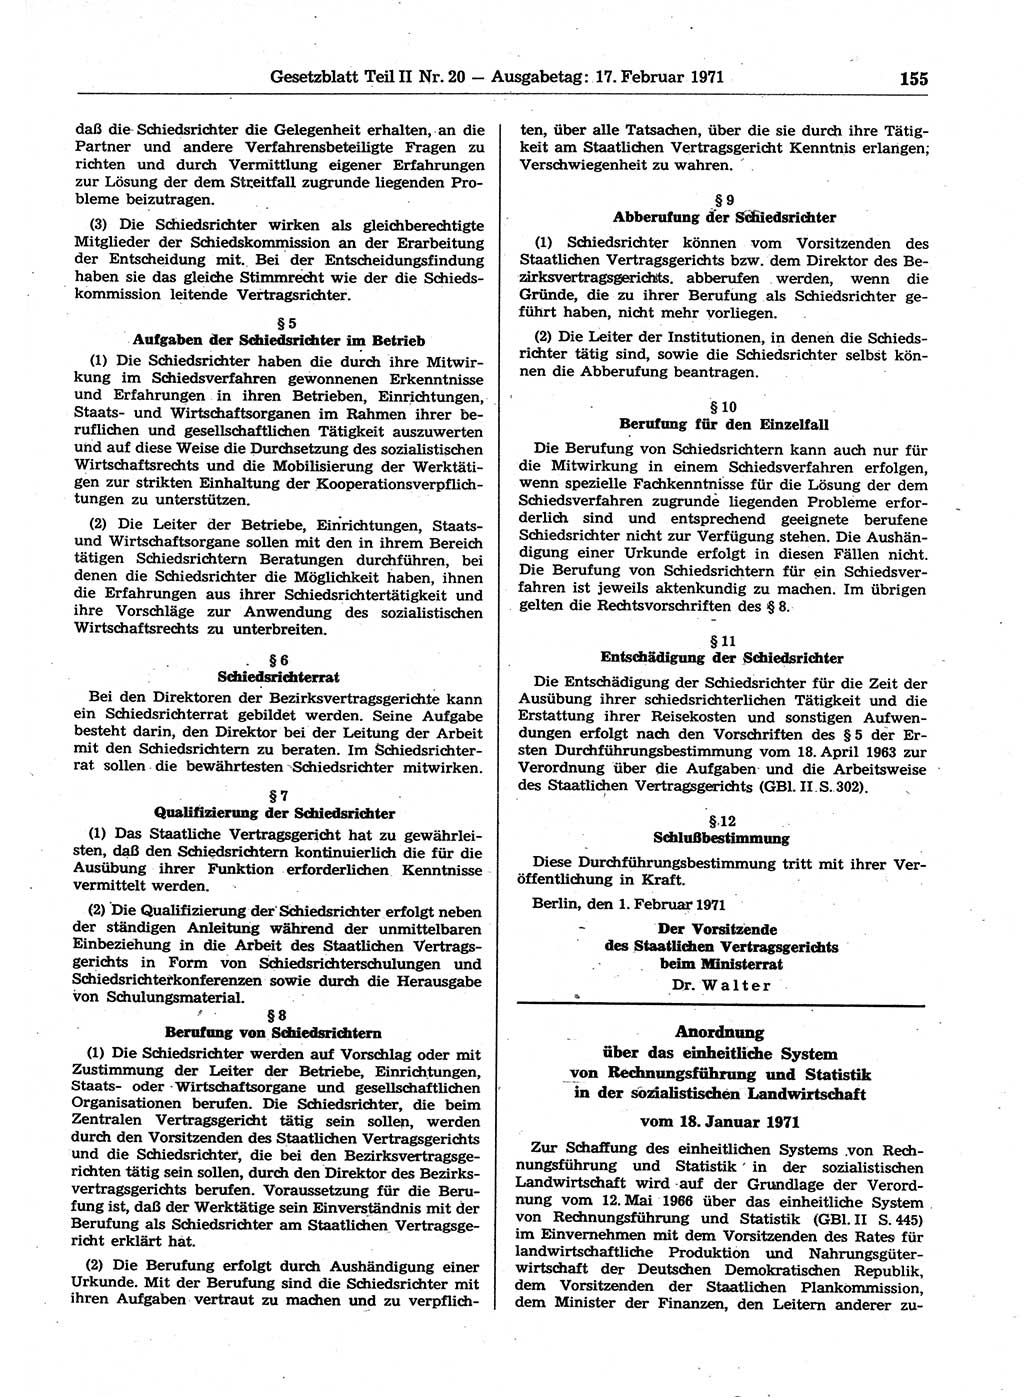 Gesetzblatt (GBl.) der Deutschen Demokratischen Republik (DDR) Teil ⅠⅠ 1971, Seite 155 (GBl. DDR ⅠⅠ 1971, S. 155)